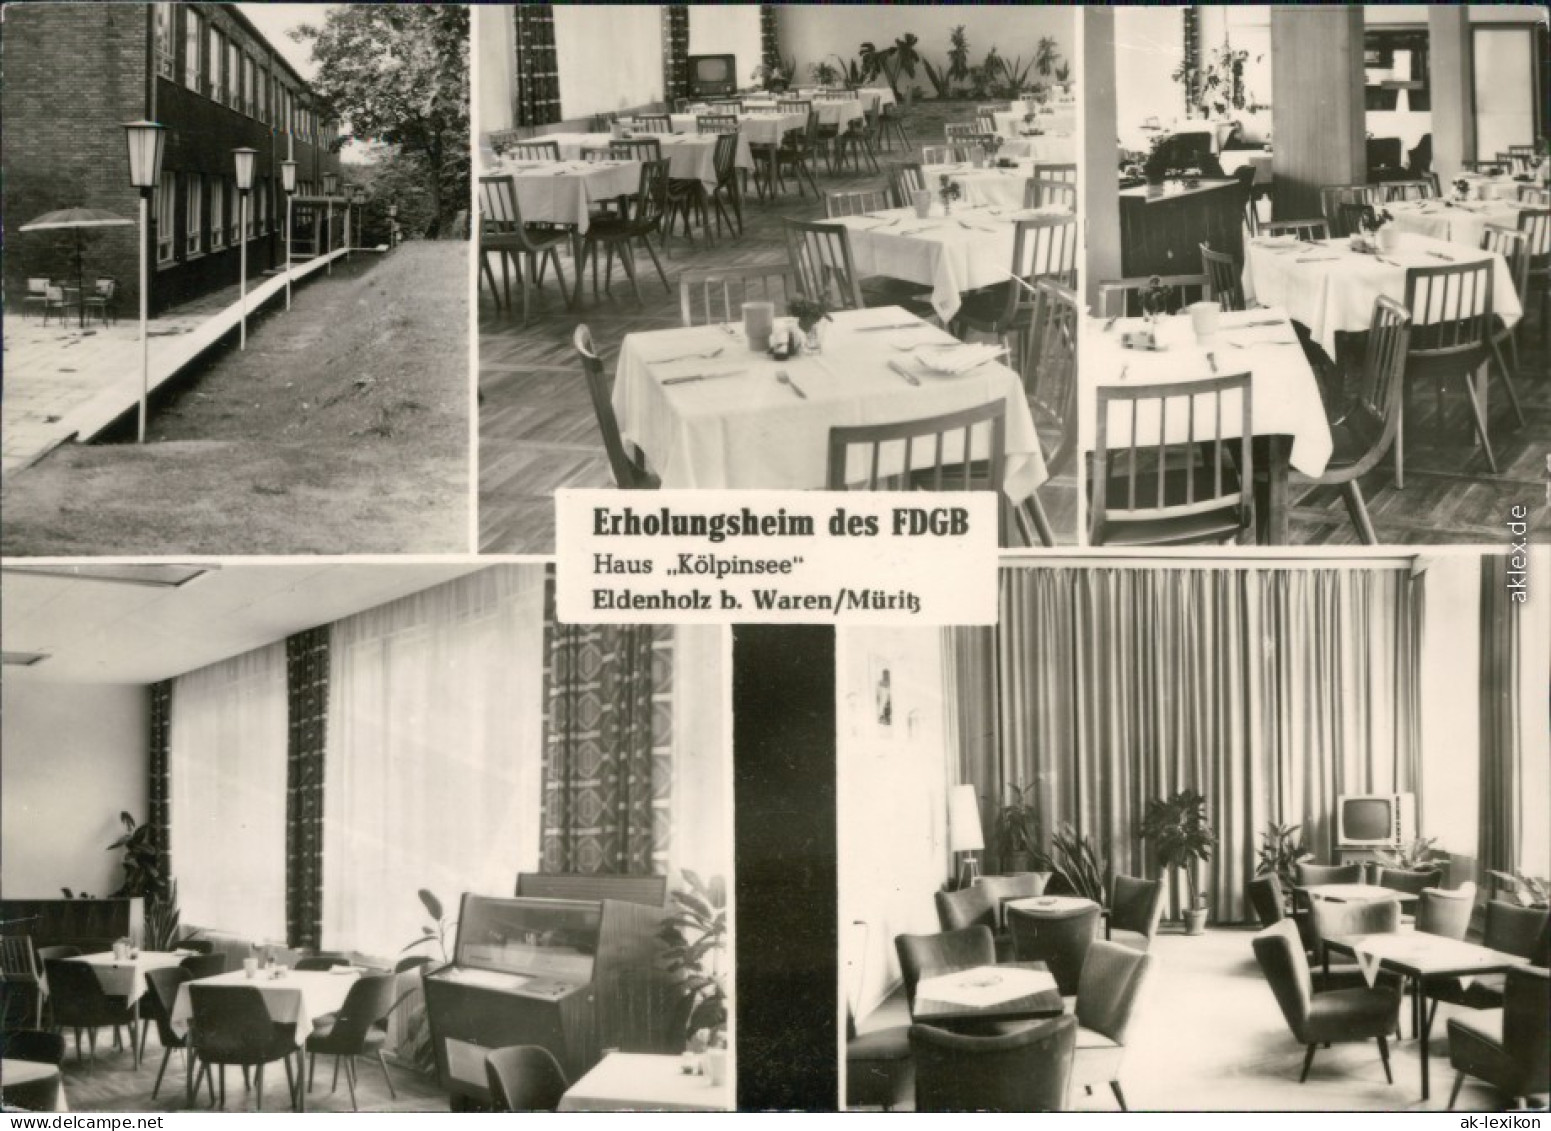 Ansichtskarte Waren (Müritz) FDGB-Erholungsheim Haus Kölpinsee 1969 - Waren (Mueritz)